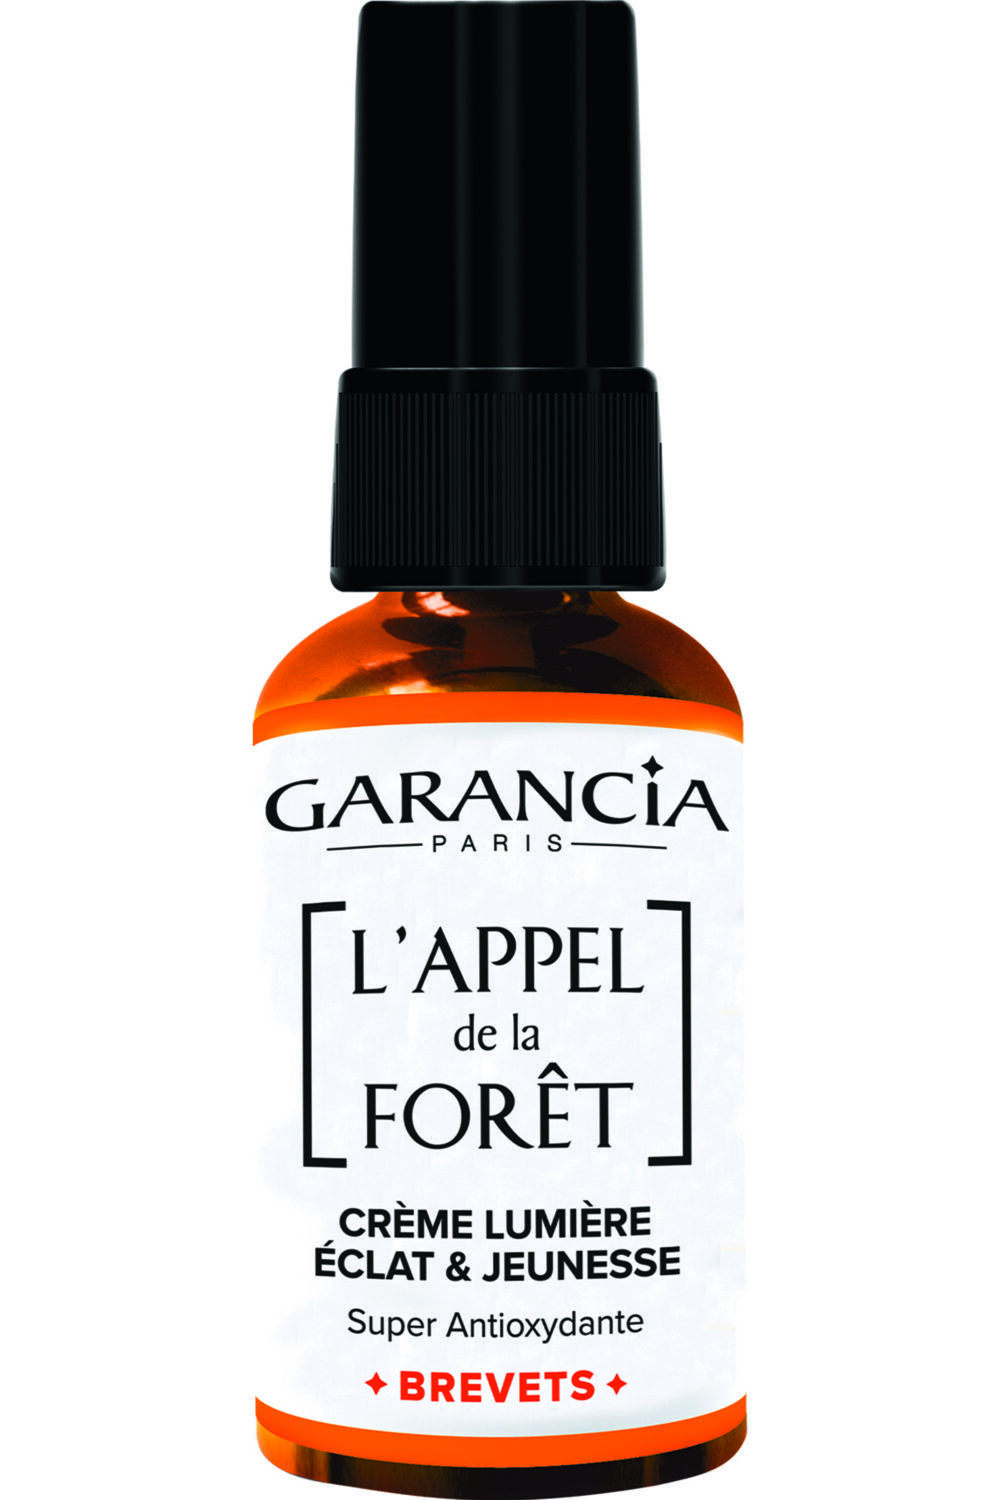 Garancia - Crème lumière Eclat & Jeunesse L'Appel de la forêt 30ml